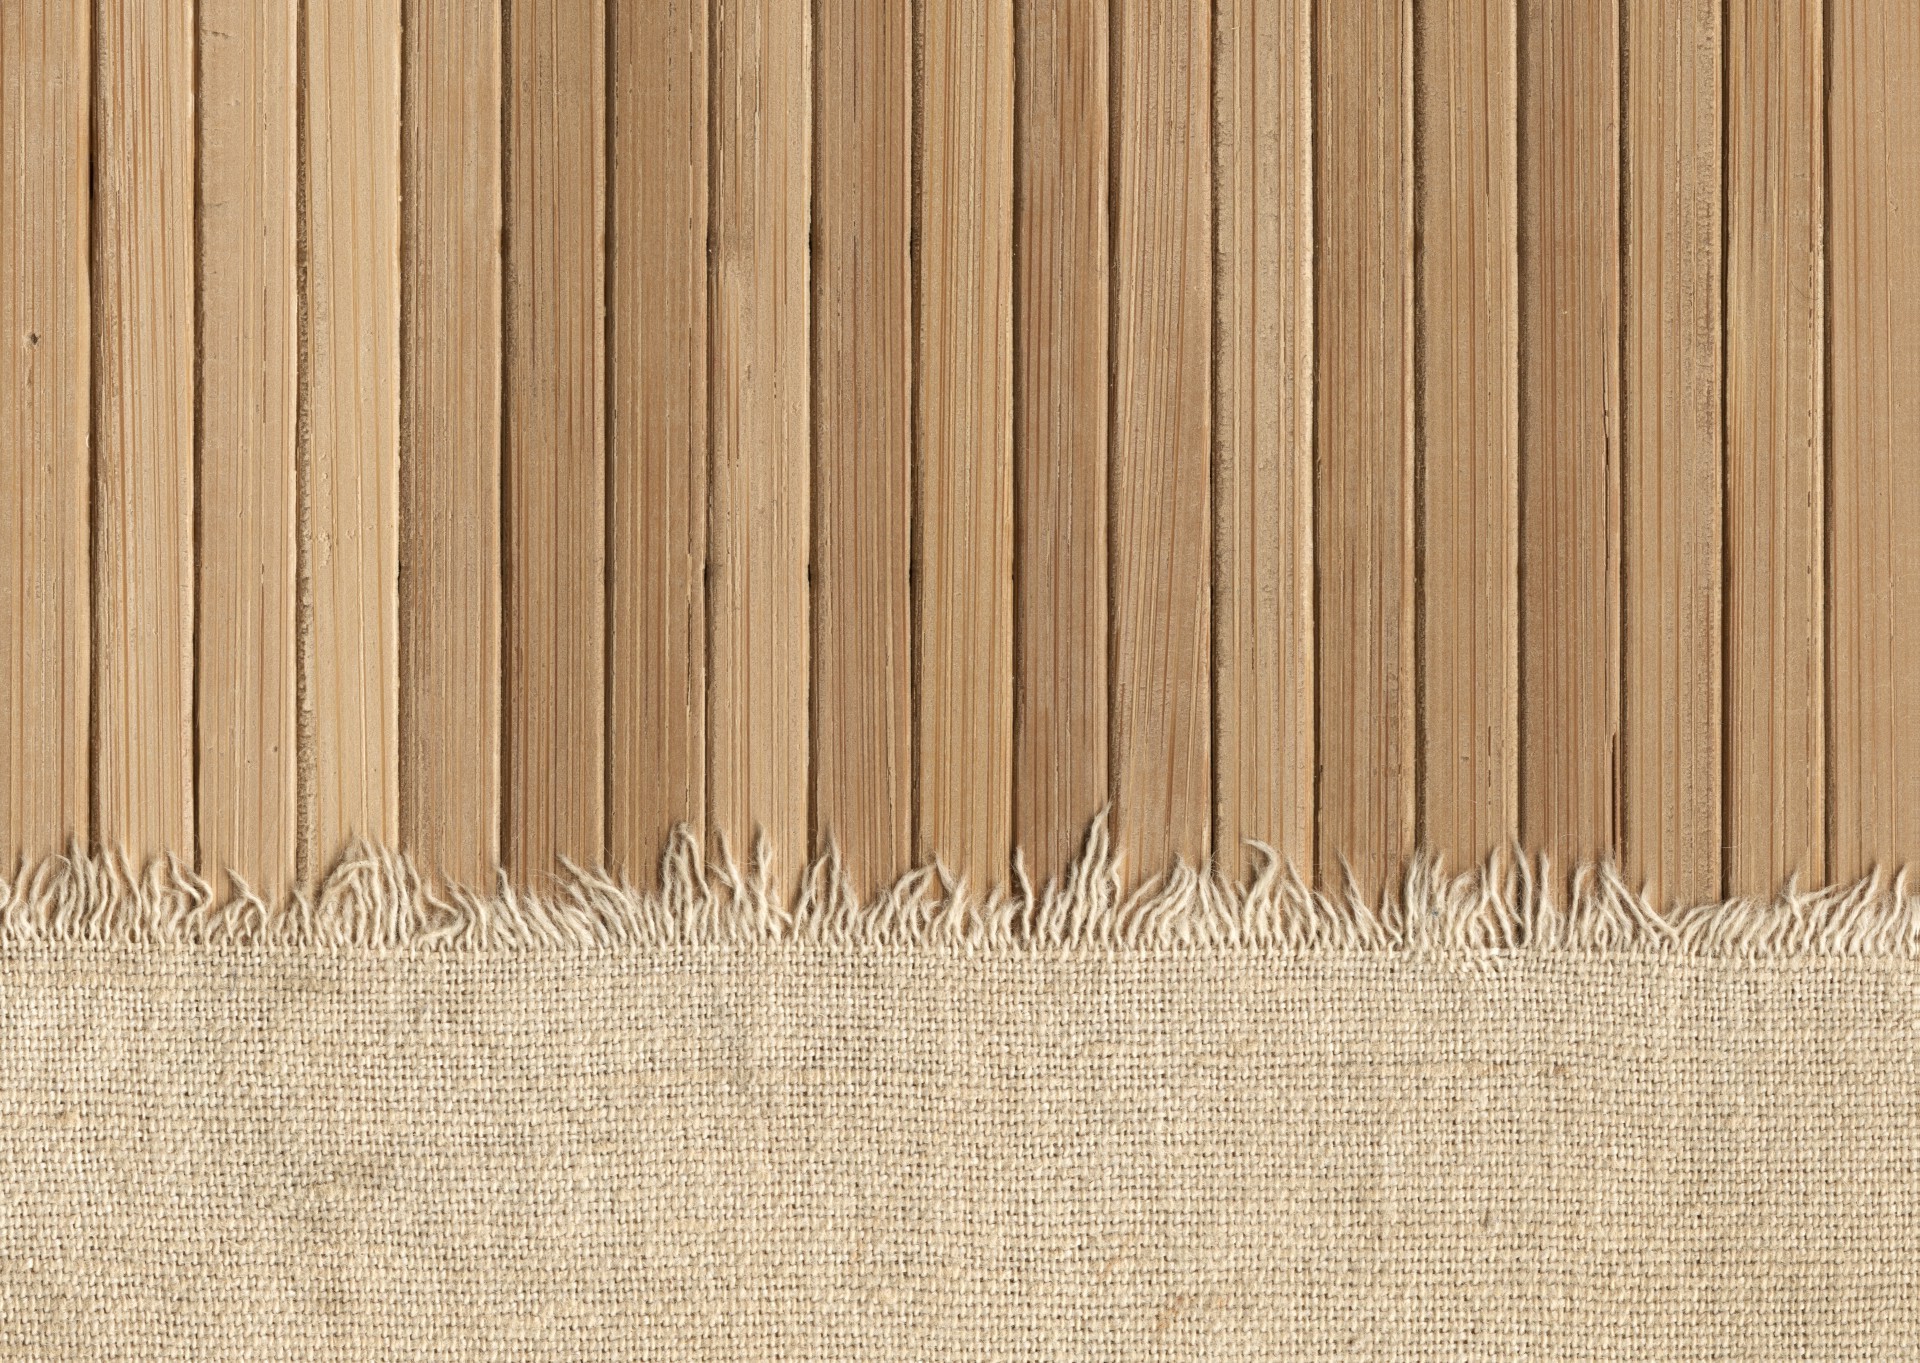 дерево древесины шаблон ткань текстура рабочего стола дизайн поверхность ретро деревянные грубо фон старый пустые обои аннотация деревянный